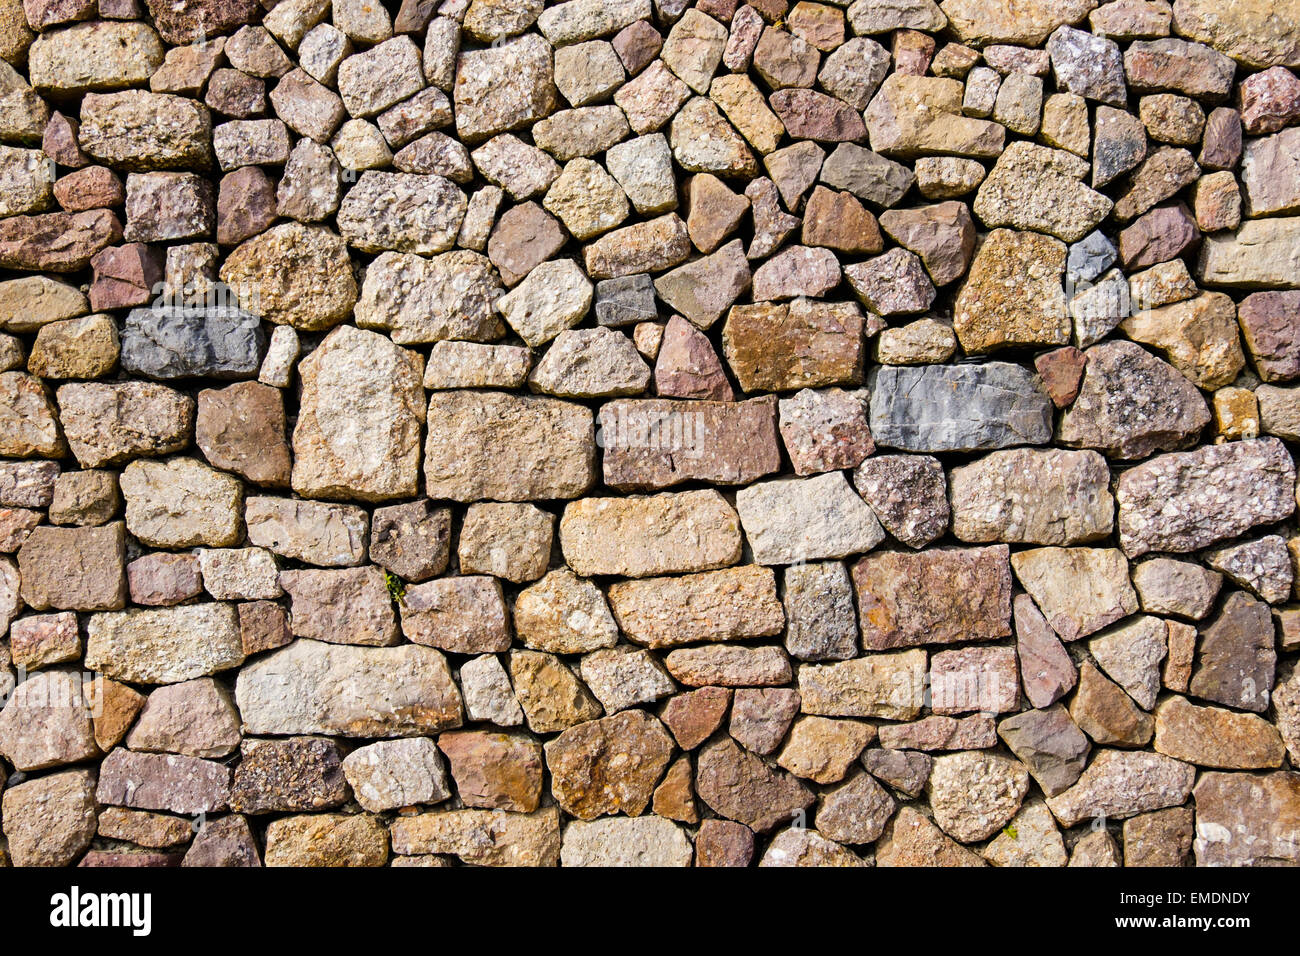 Piedras de diferentes formas, tamaños y colores, en un muro de piedra seca en un edificio. Reino Unido, Gran Bretaña Foto de stock